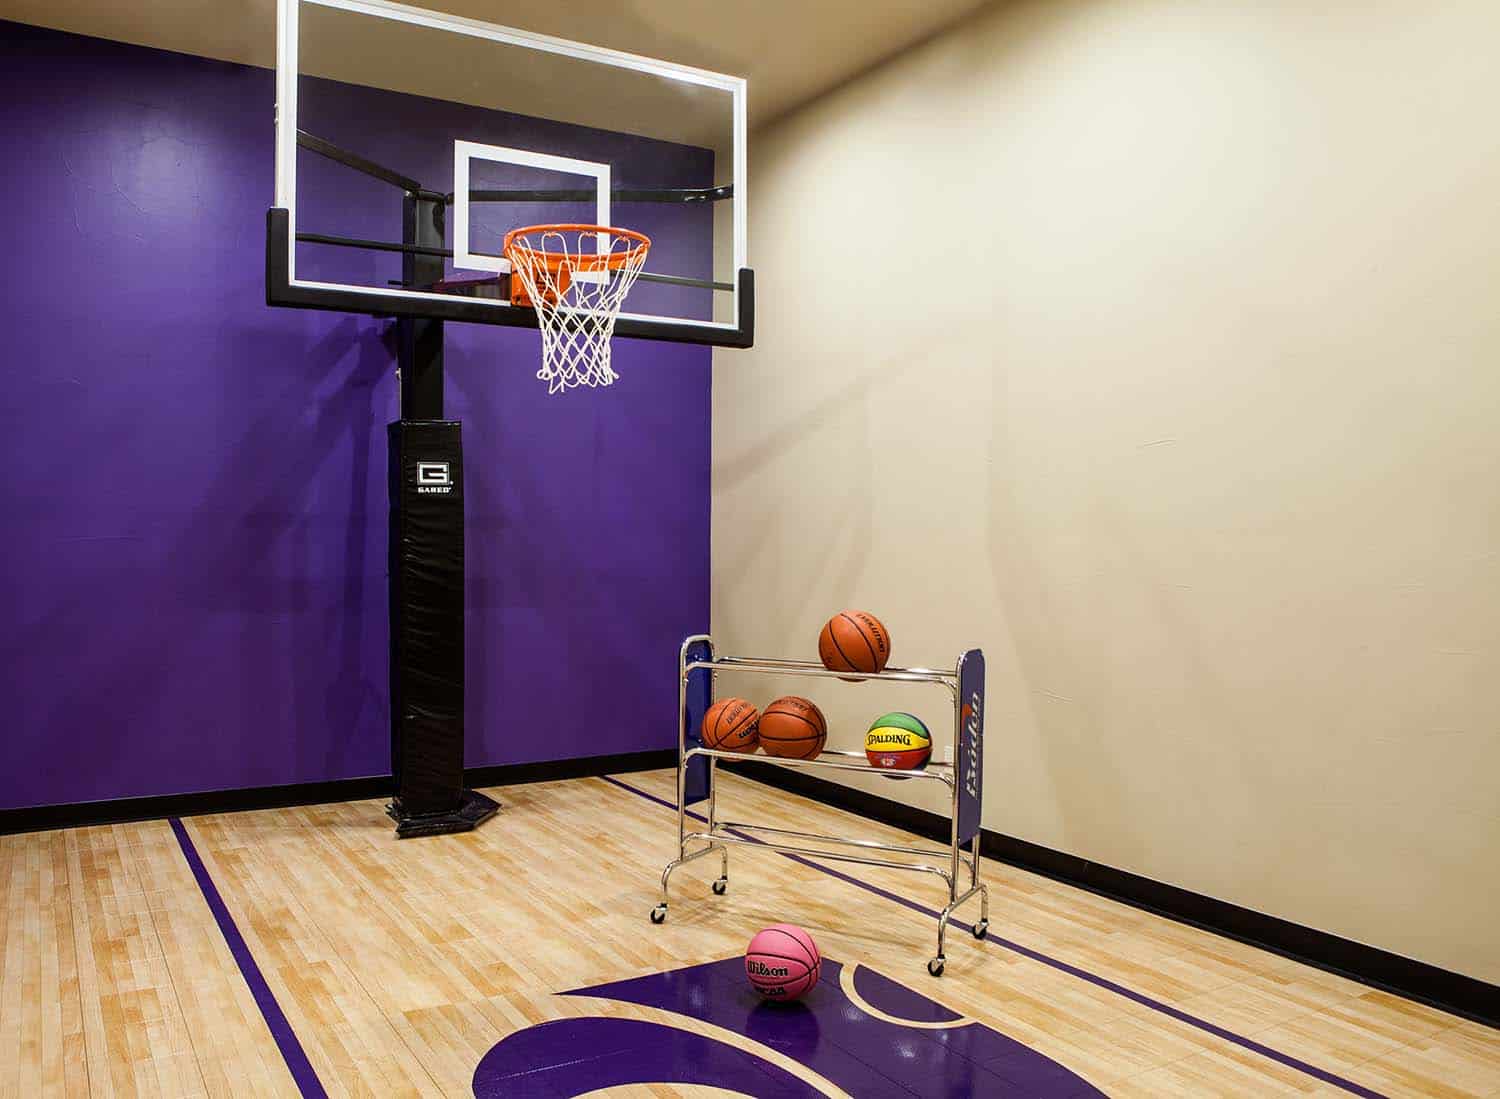 indoor-basketball-court